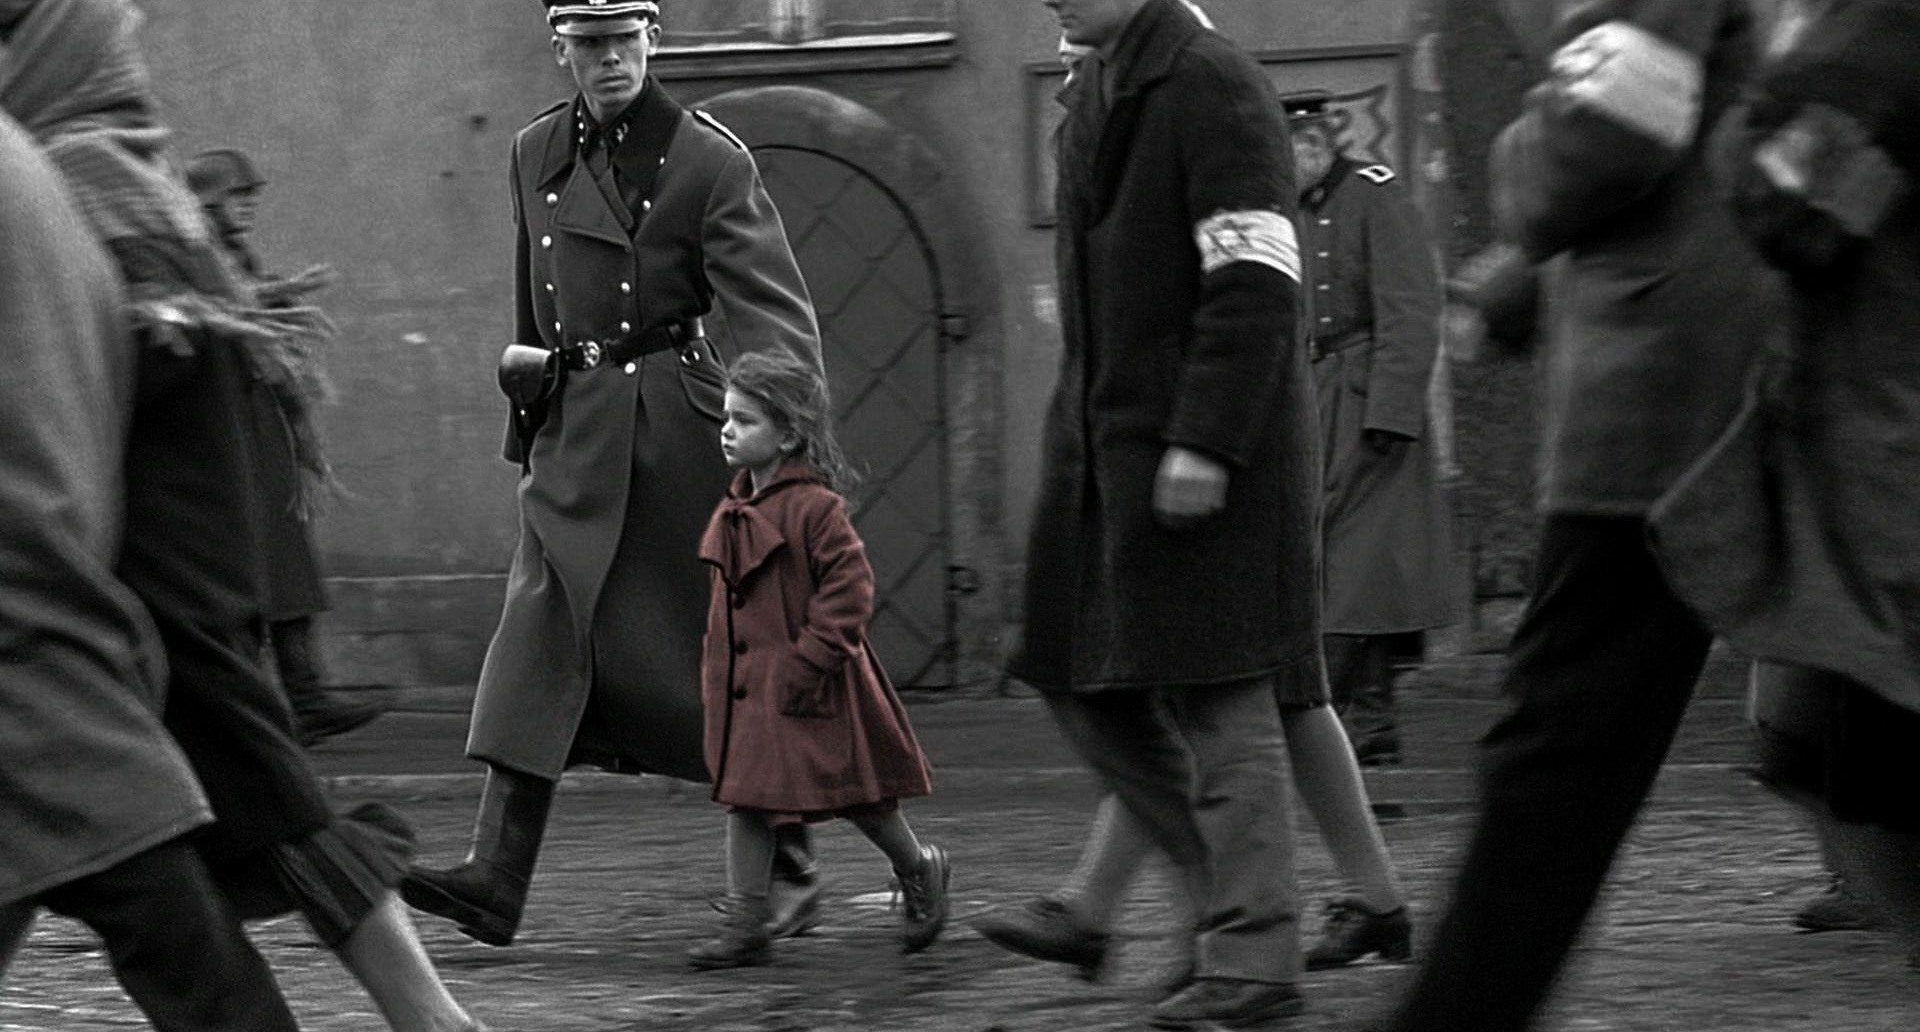 Kameraarbeit: Auf dem Bild sieht man einen SS Soldaten, der neben einem kleinen Mädchen im roten Mantel geht. Um die beiden herum gehen noch ein paar weitere Menschen mit Armbinden, die den Davidstern zeigen